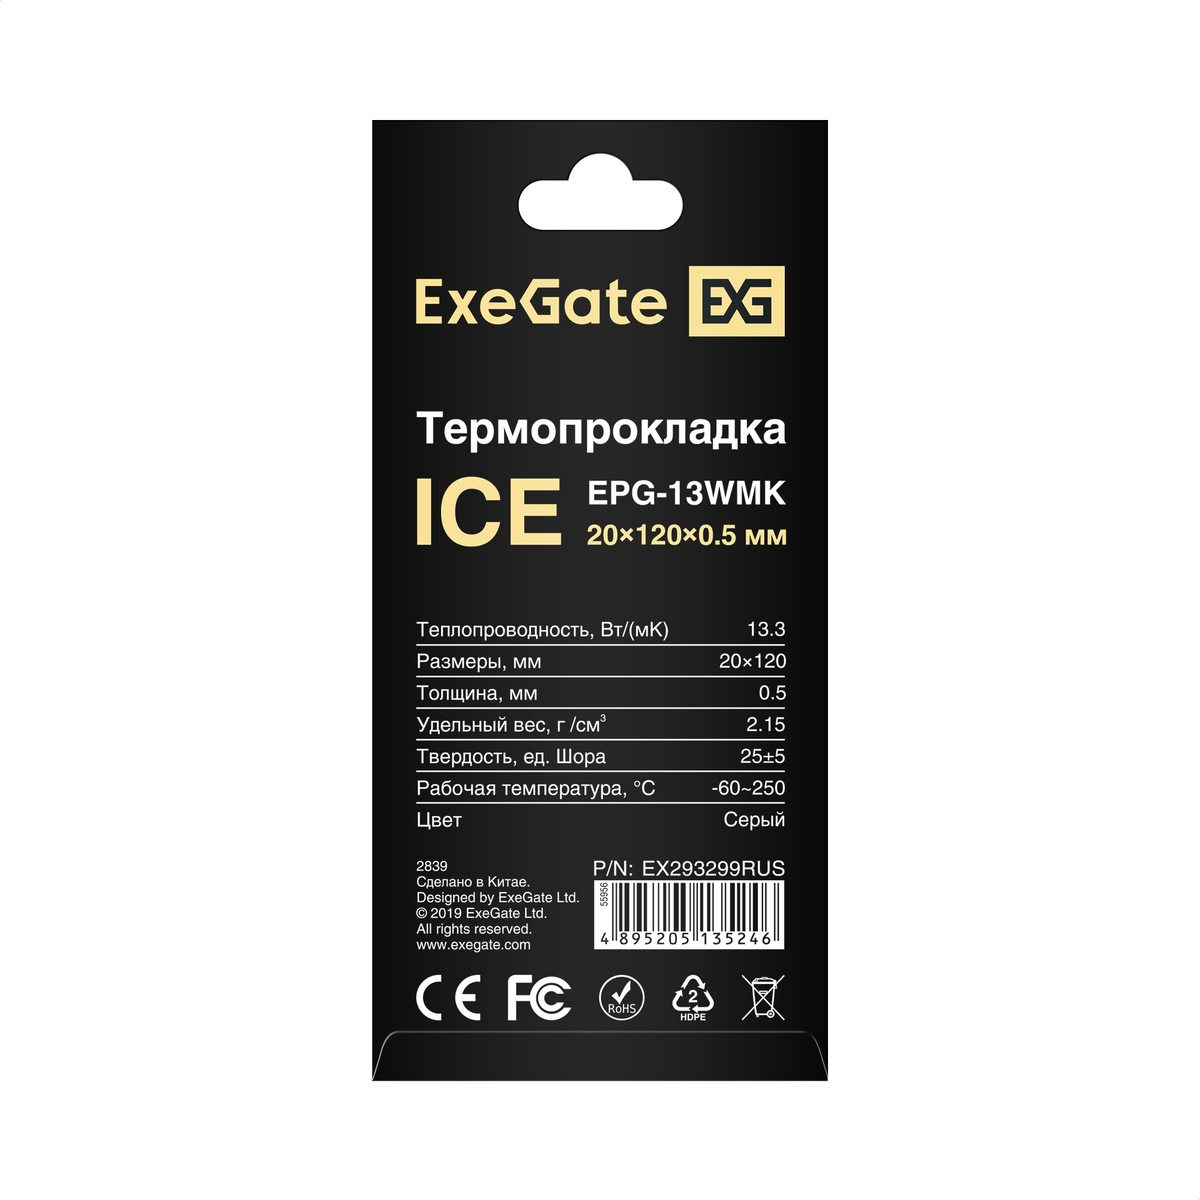  ExeGate Ice EPG-13WMK 20x120x0.5